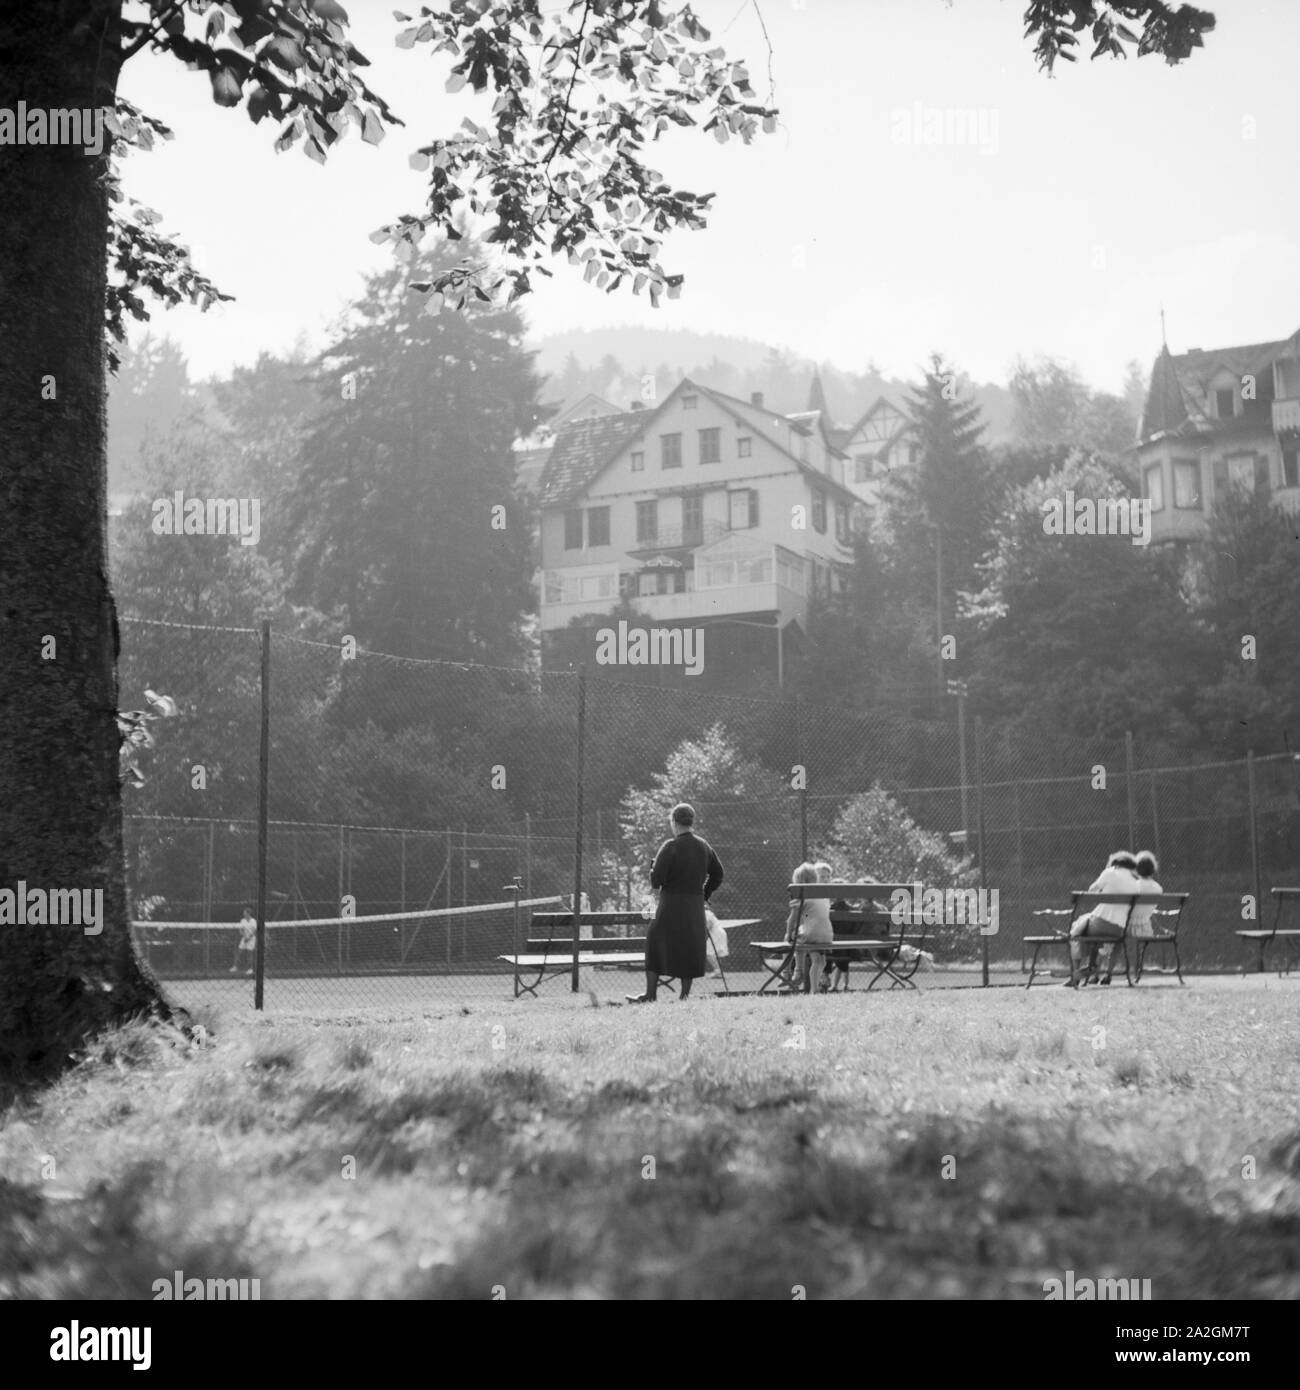 Zuschauer an einem Tennisplatz, Deutschland 1930er Jahre. Spectators at a tennis court, Germany 1930s. Stock Photo